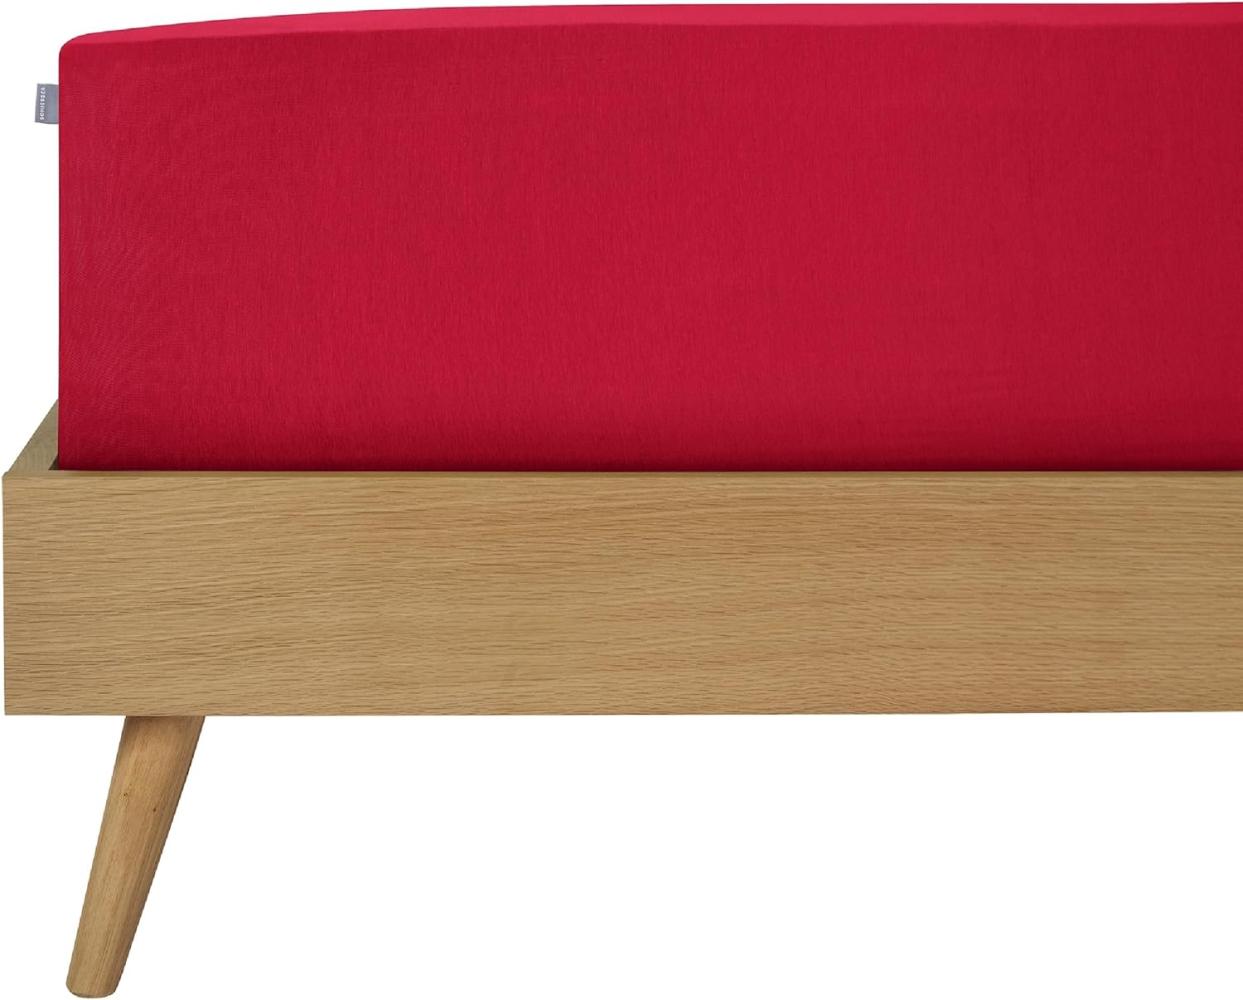 Schiesser Spannbettlaken Edel-Jersey Rot, 150x200 cm, 100% Baumwolle Bild 1